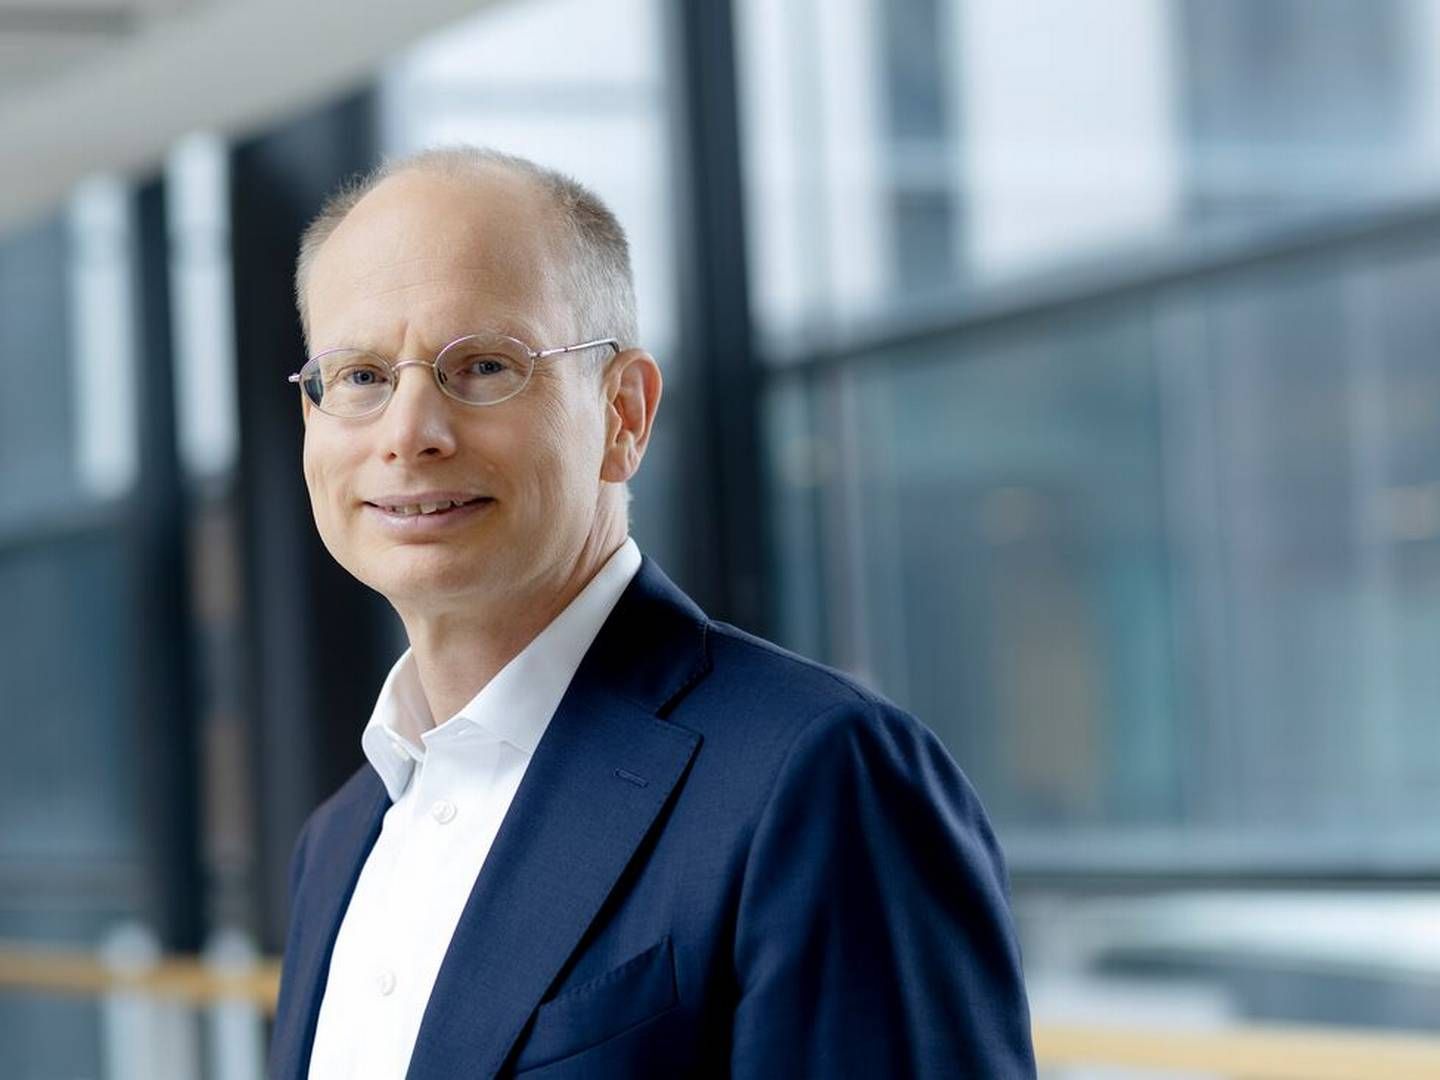 Håkan Agnevall, Wärtsiläs topchef, er optimistisk med hensyn til virksomhedens maritime forretning, fordi antallet af nybygninger fortsat er højt. | Foto: Wärtsilä Corporation